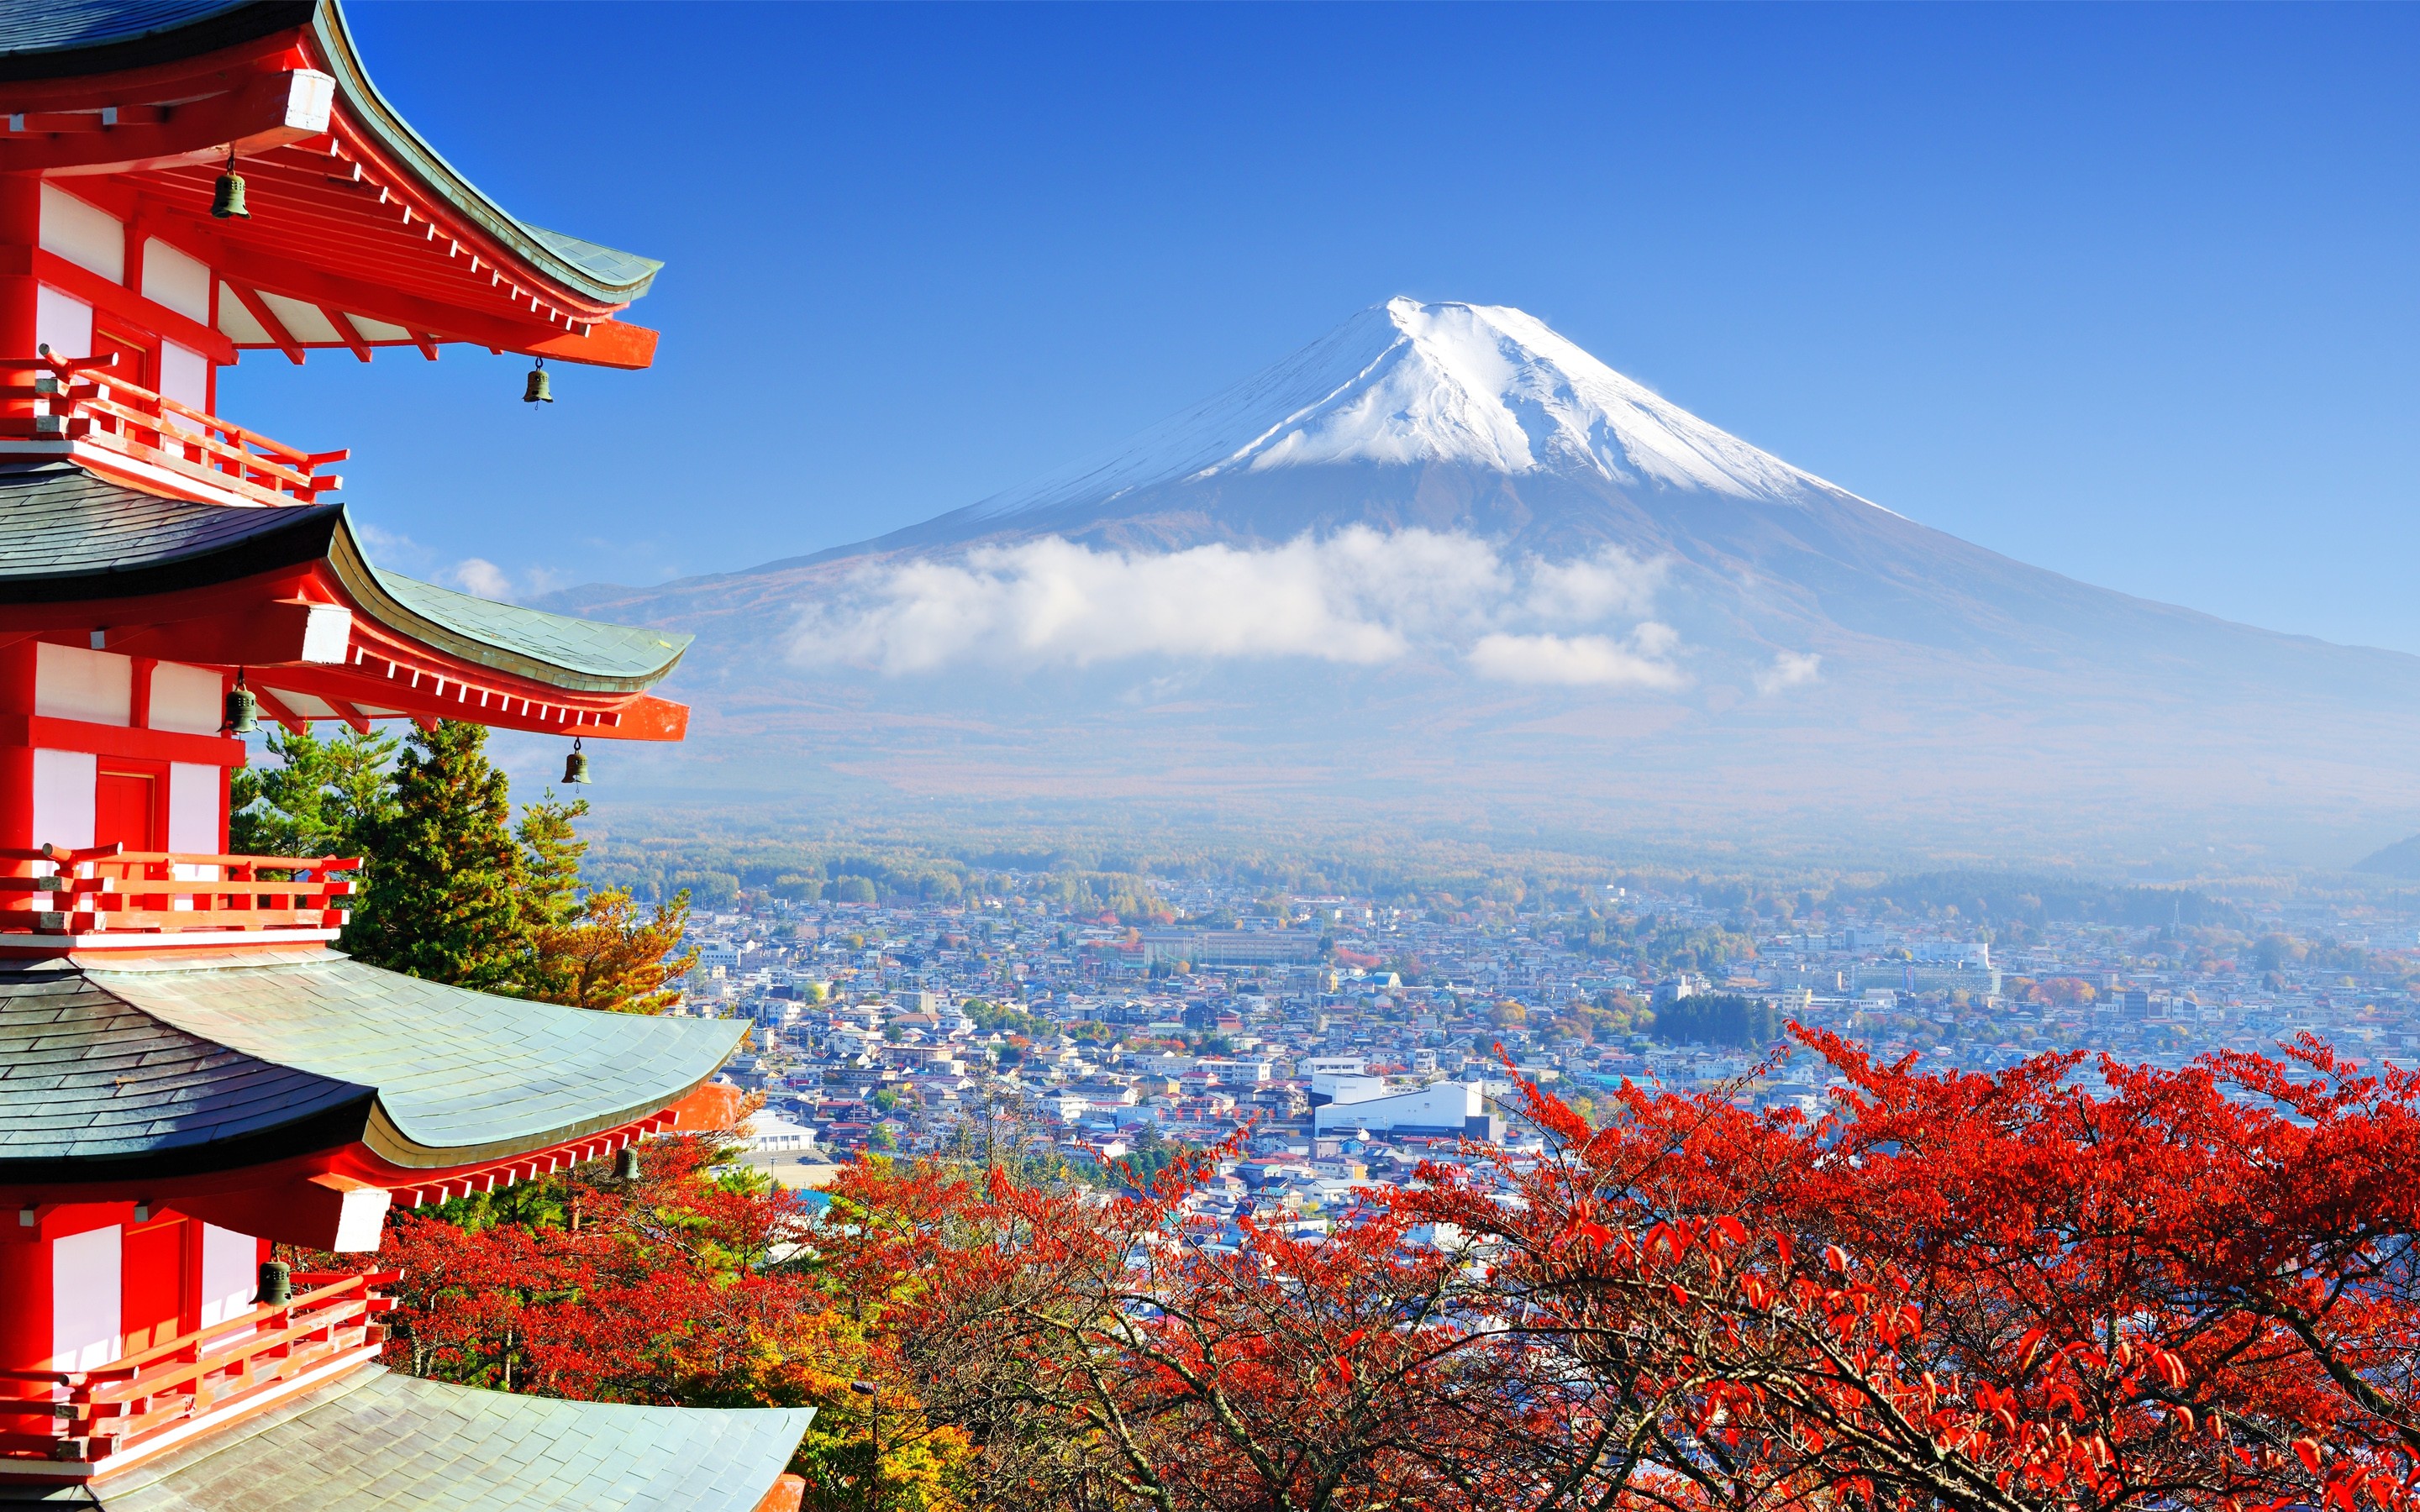 Mount Fuji Wallpaper Images - Free Download on Freepik